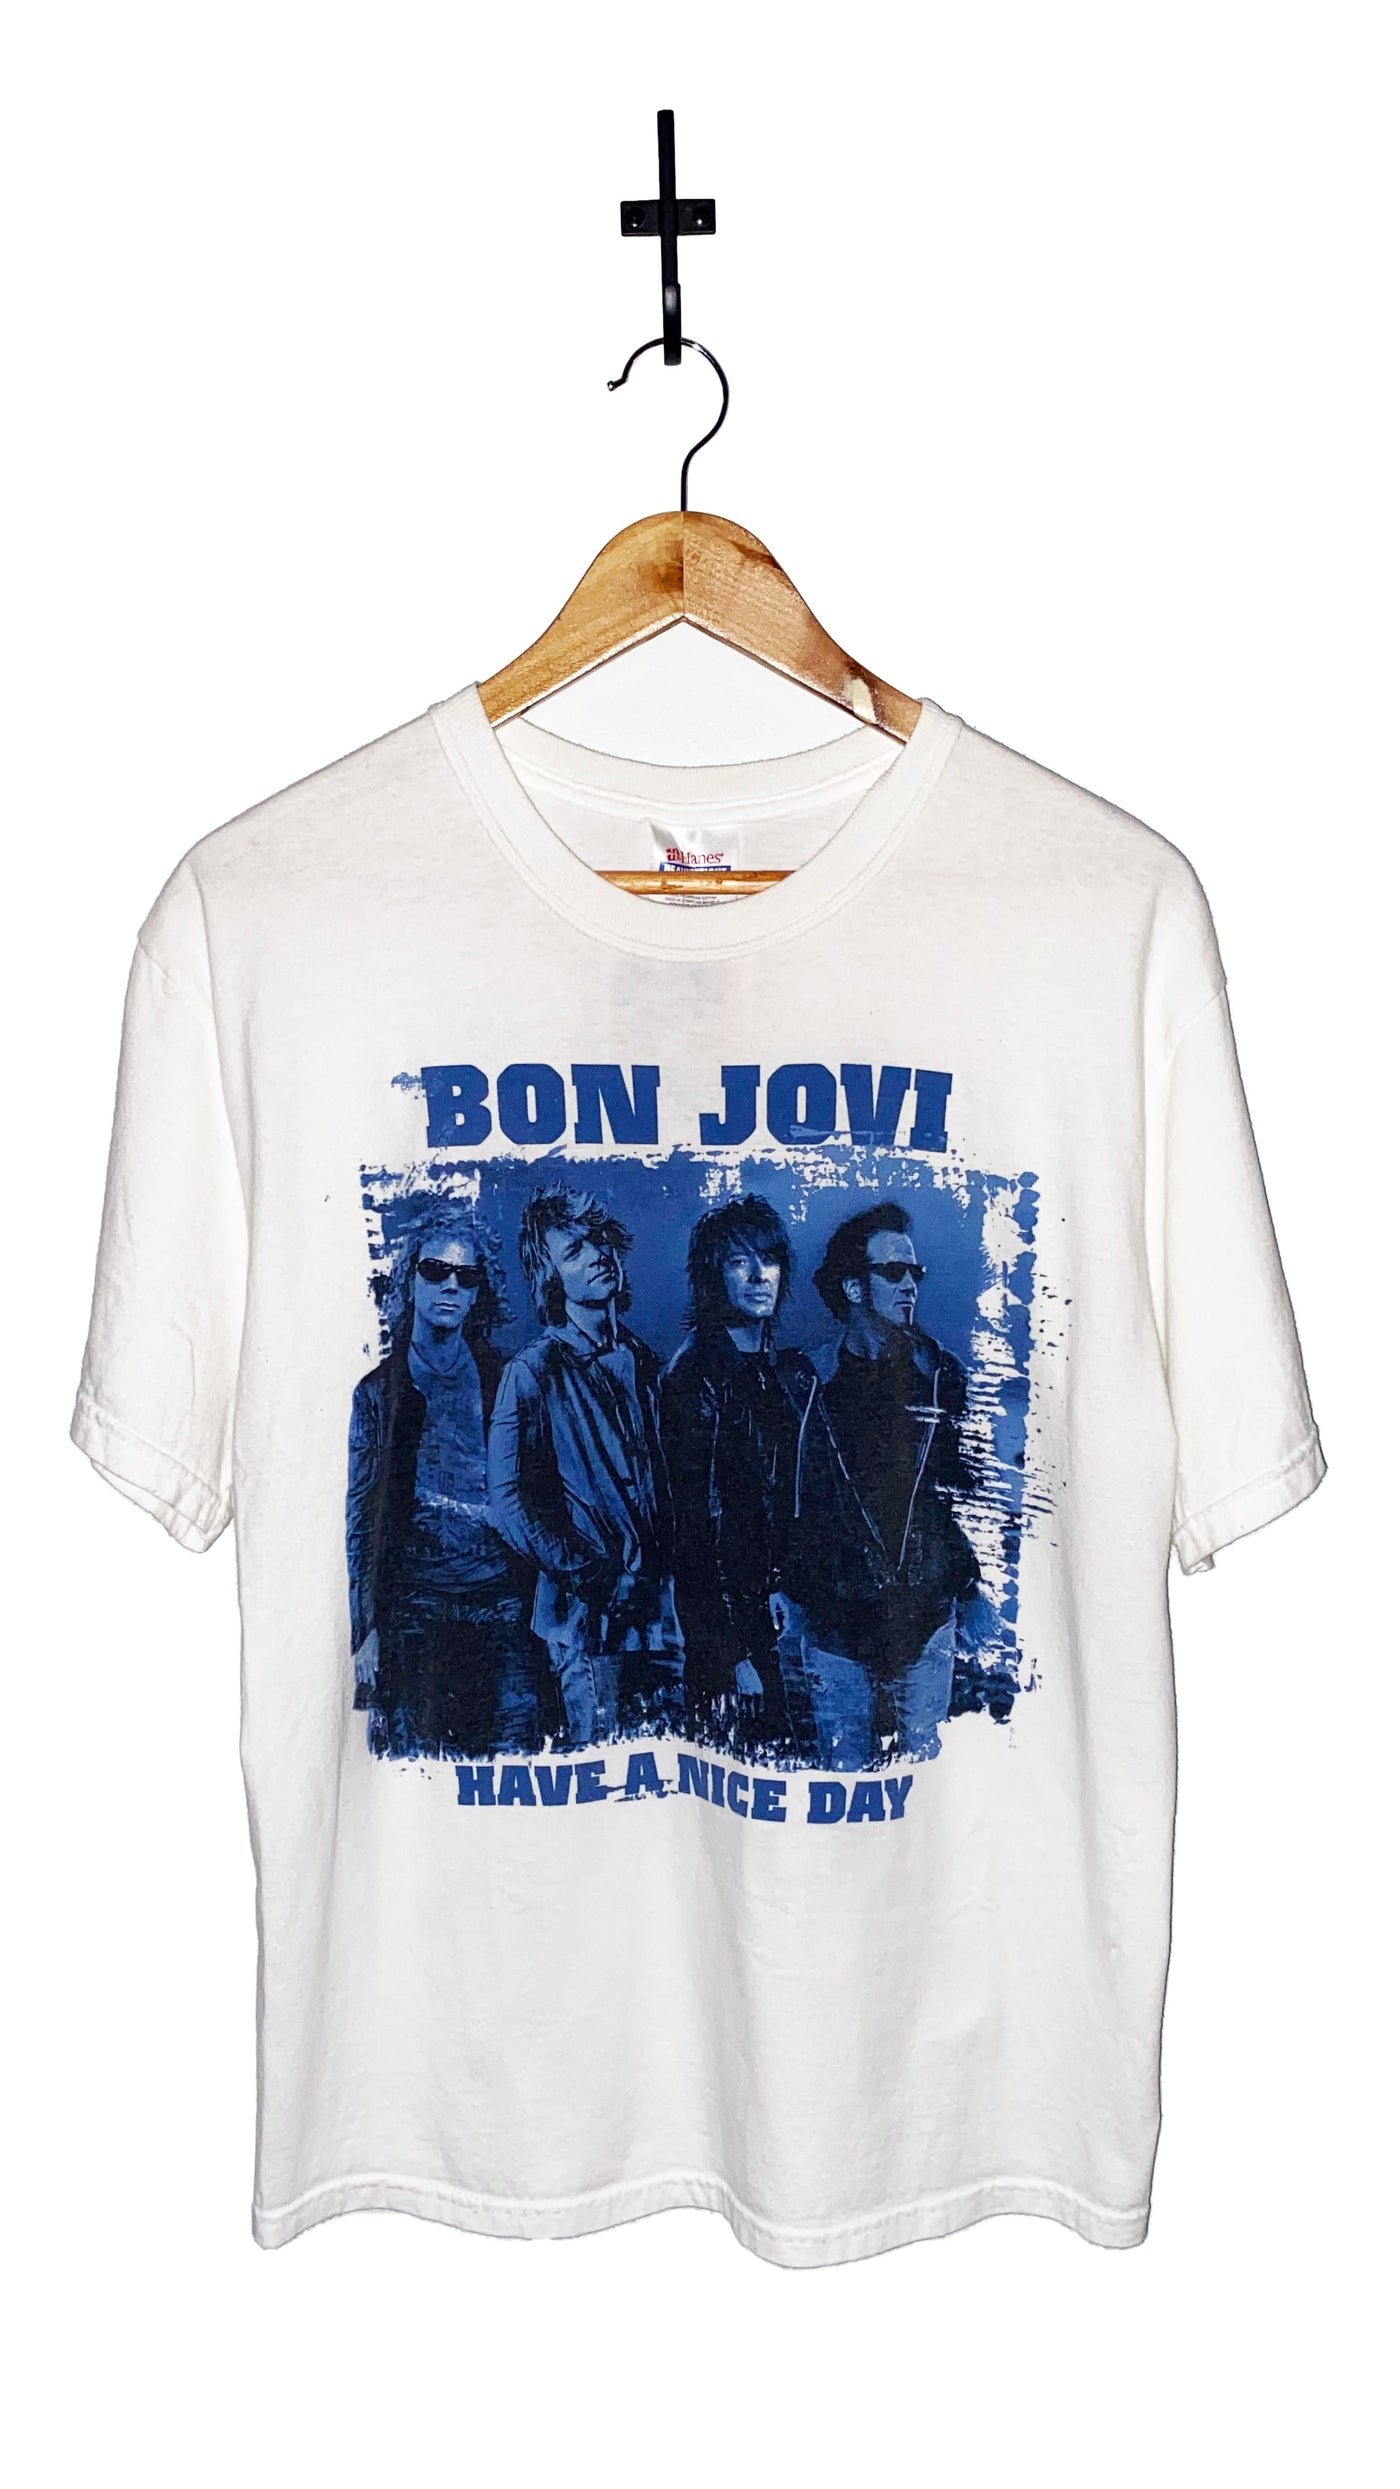 Bon Jovi 2006 Tour T-Shirt